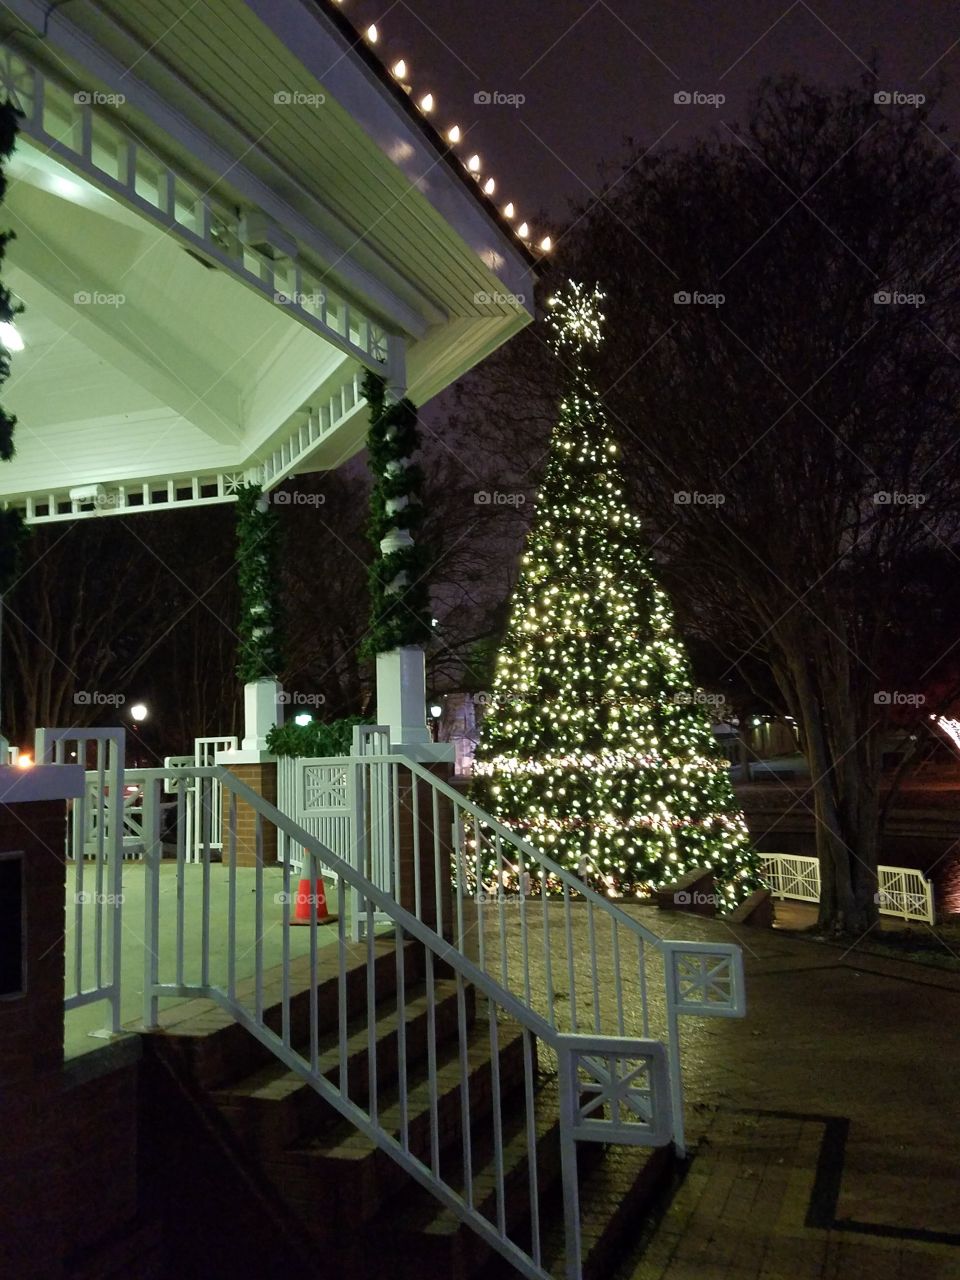 Downtown Plano Christmas Tree and Gazebo